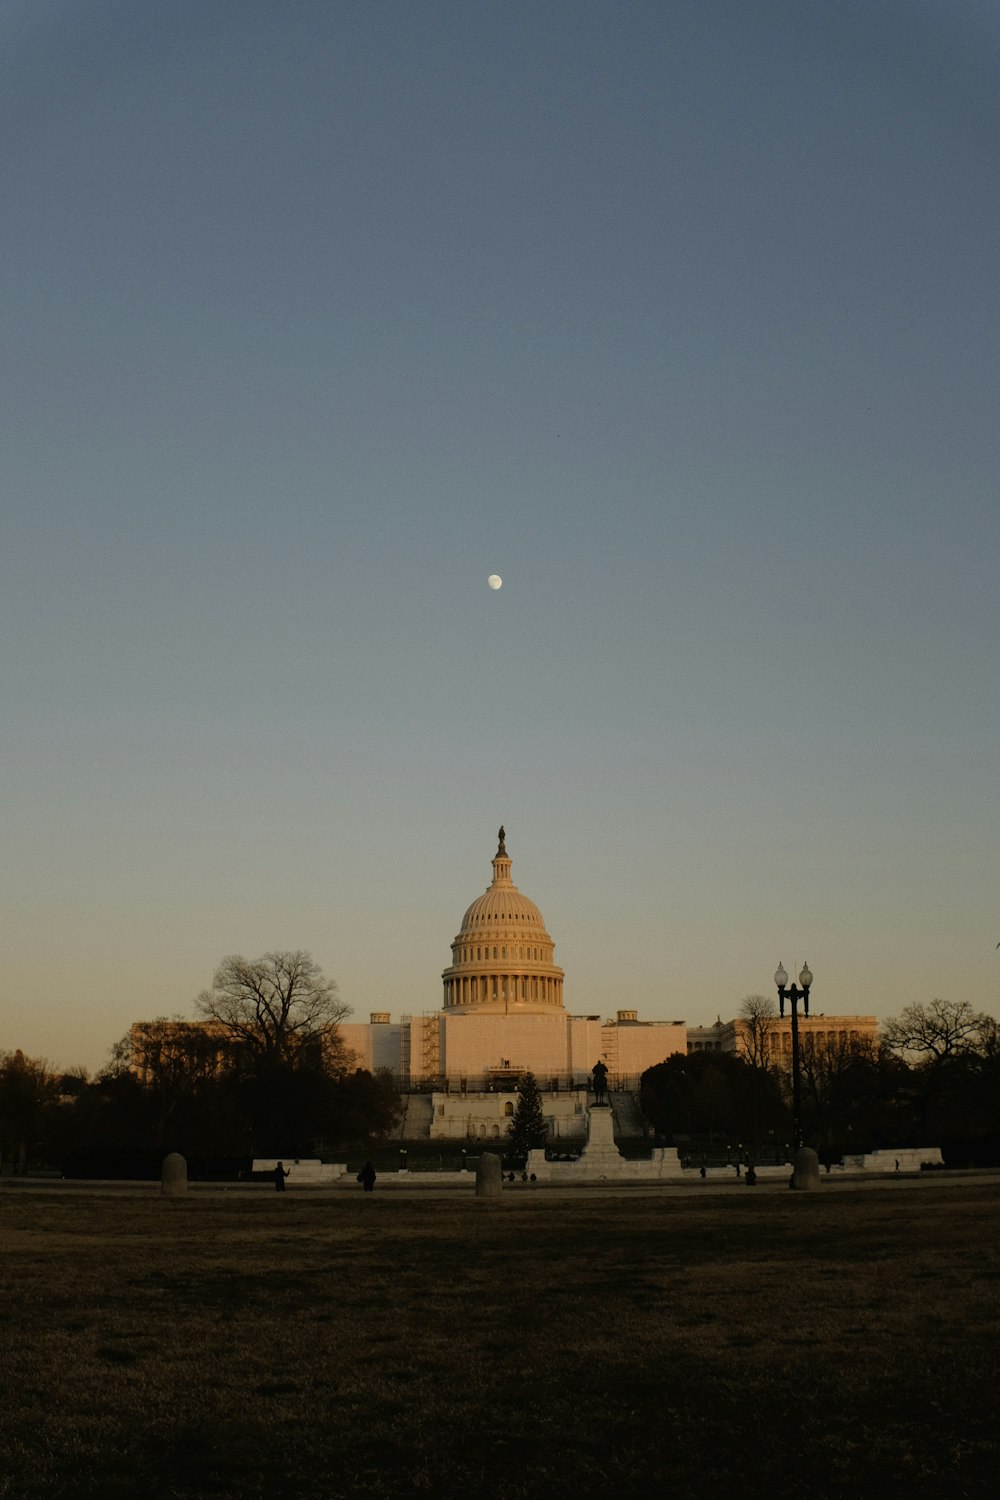 Le dôme du Capitole des États-Unis au crépuscule